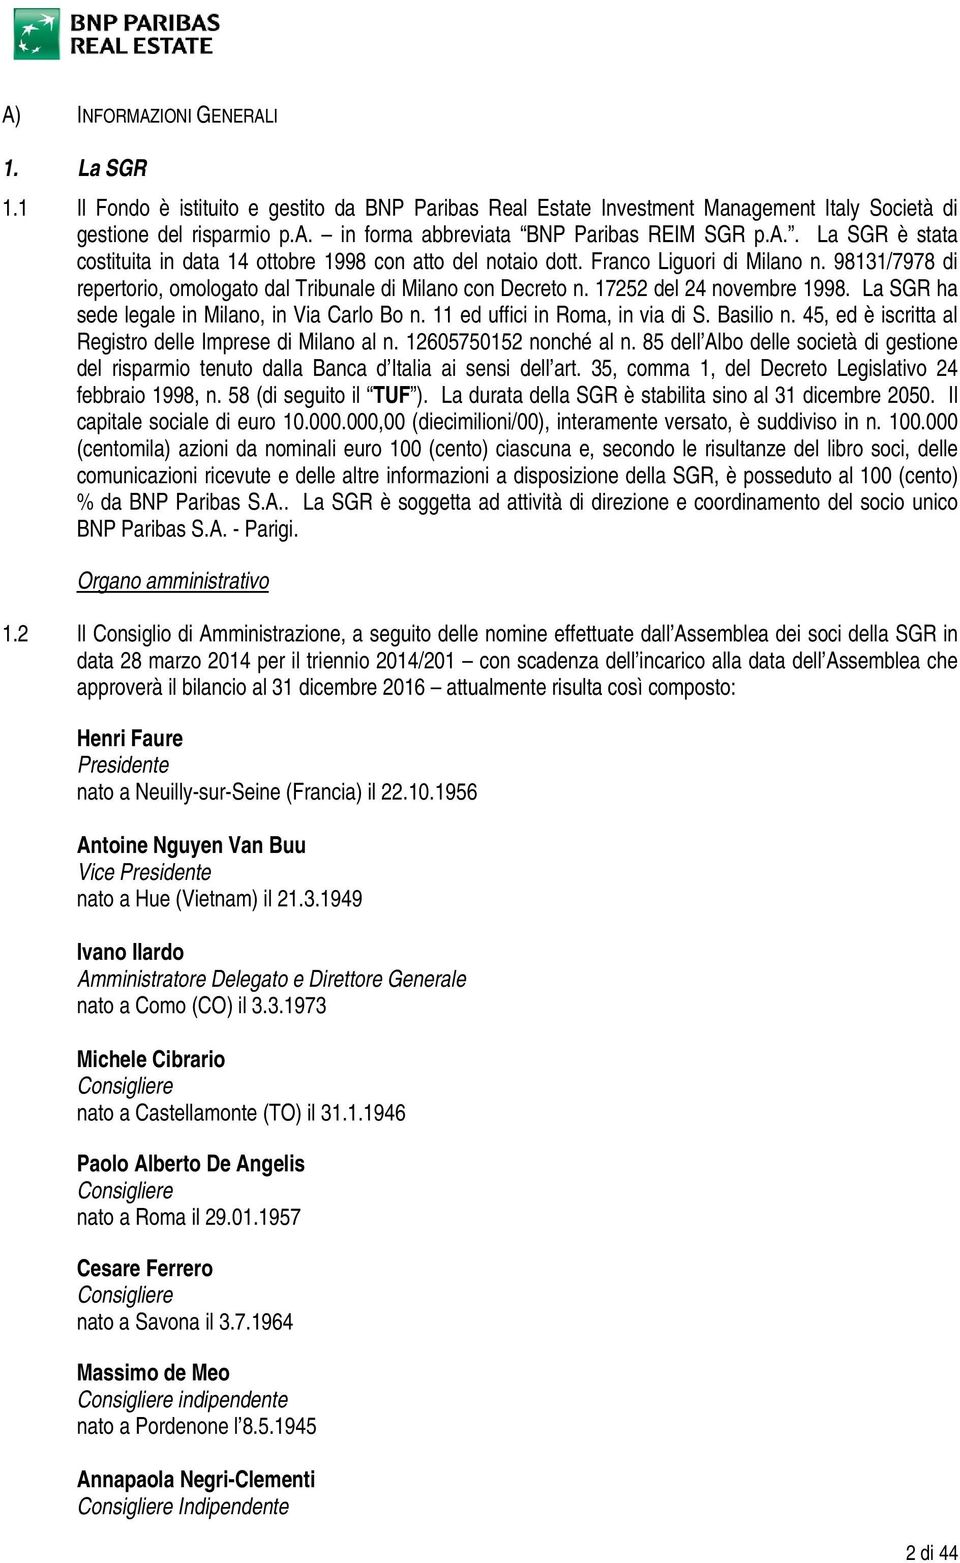 17252 del 24 novembre 1998. La SGR ha sede legale in Milano, in Via Carlo Bo n. 11 ed uffici in Roma, in via di S. Basilio n. 45, ed è iscritta al Registro delle Imprese di Milano al n.